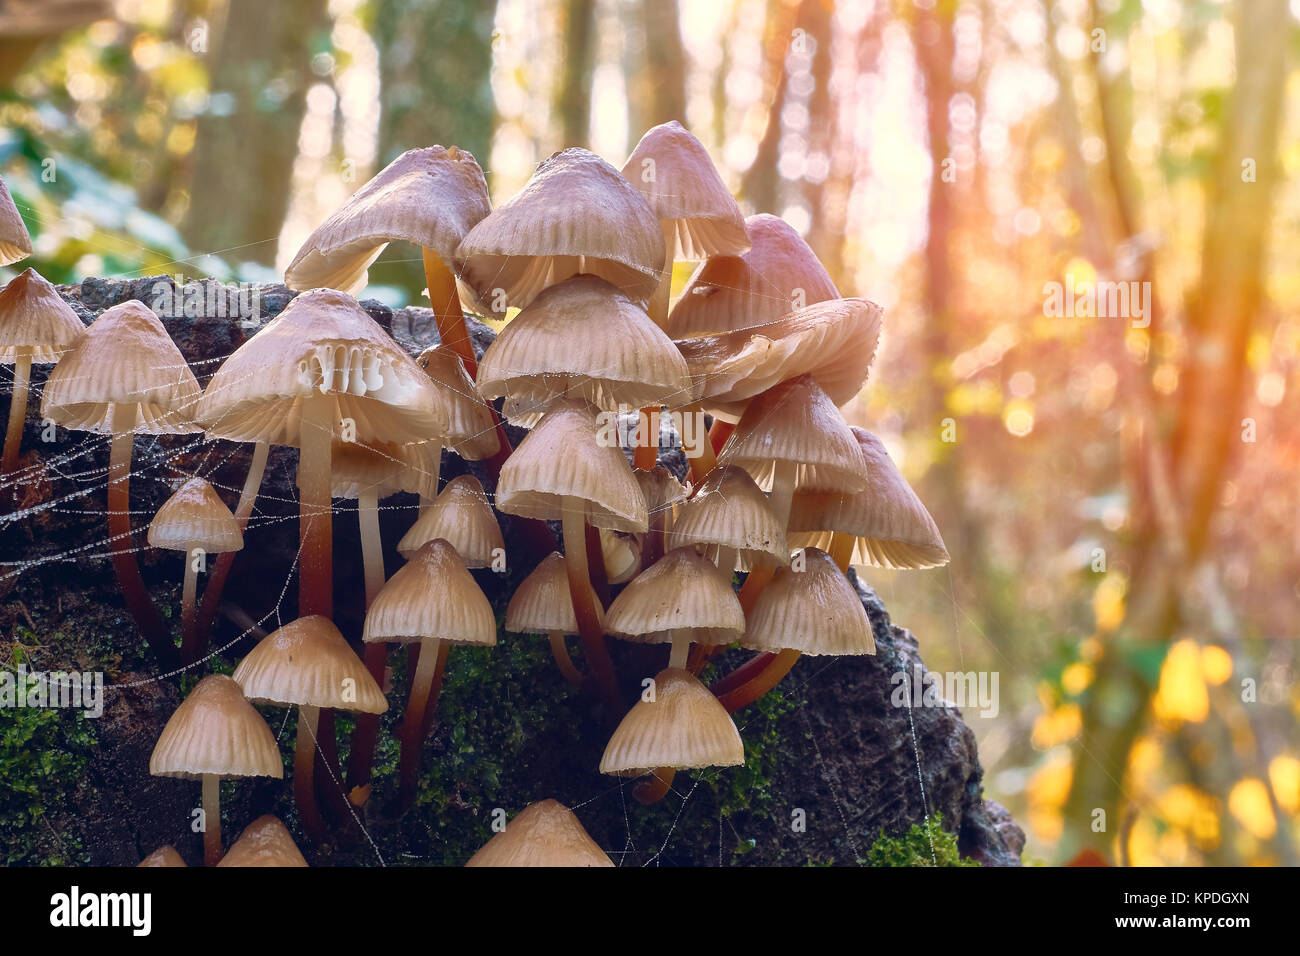 Mushrooms in natural environment. Closeup and macro photography. Stock Photo